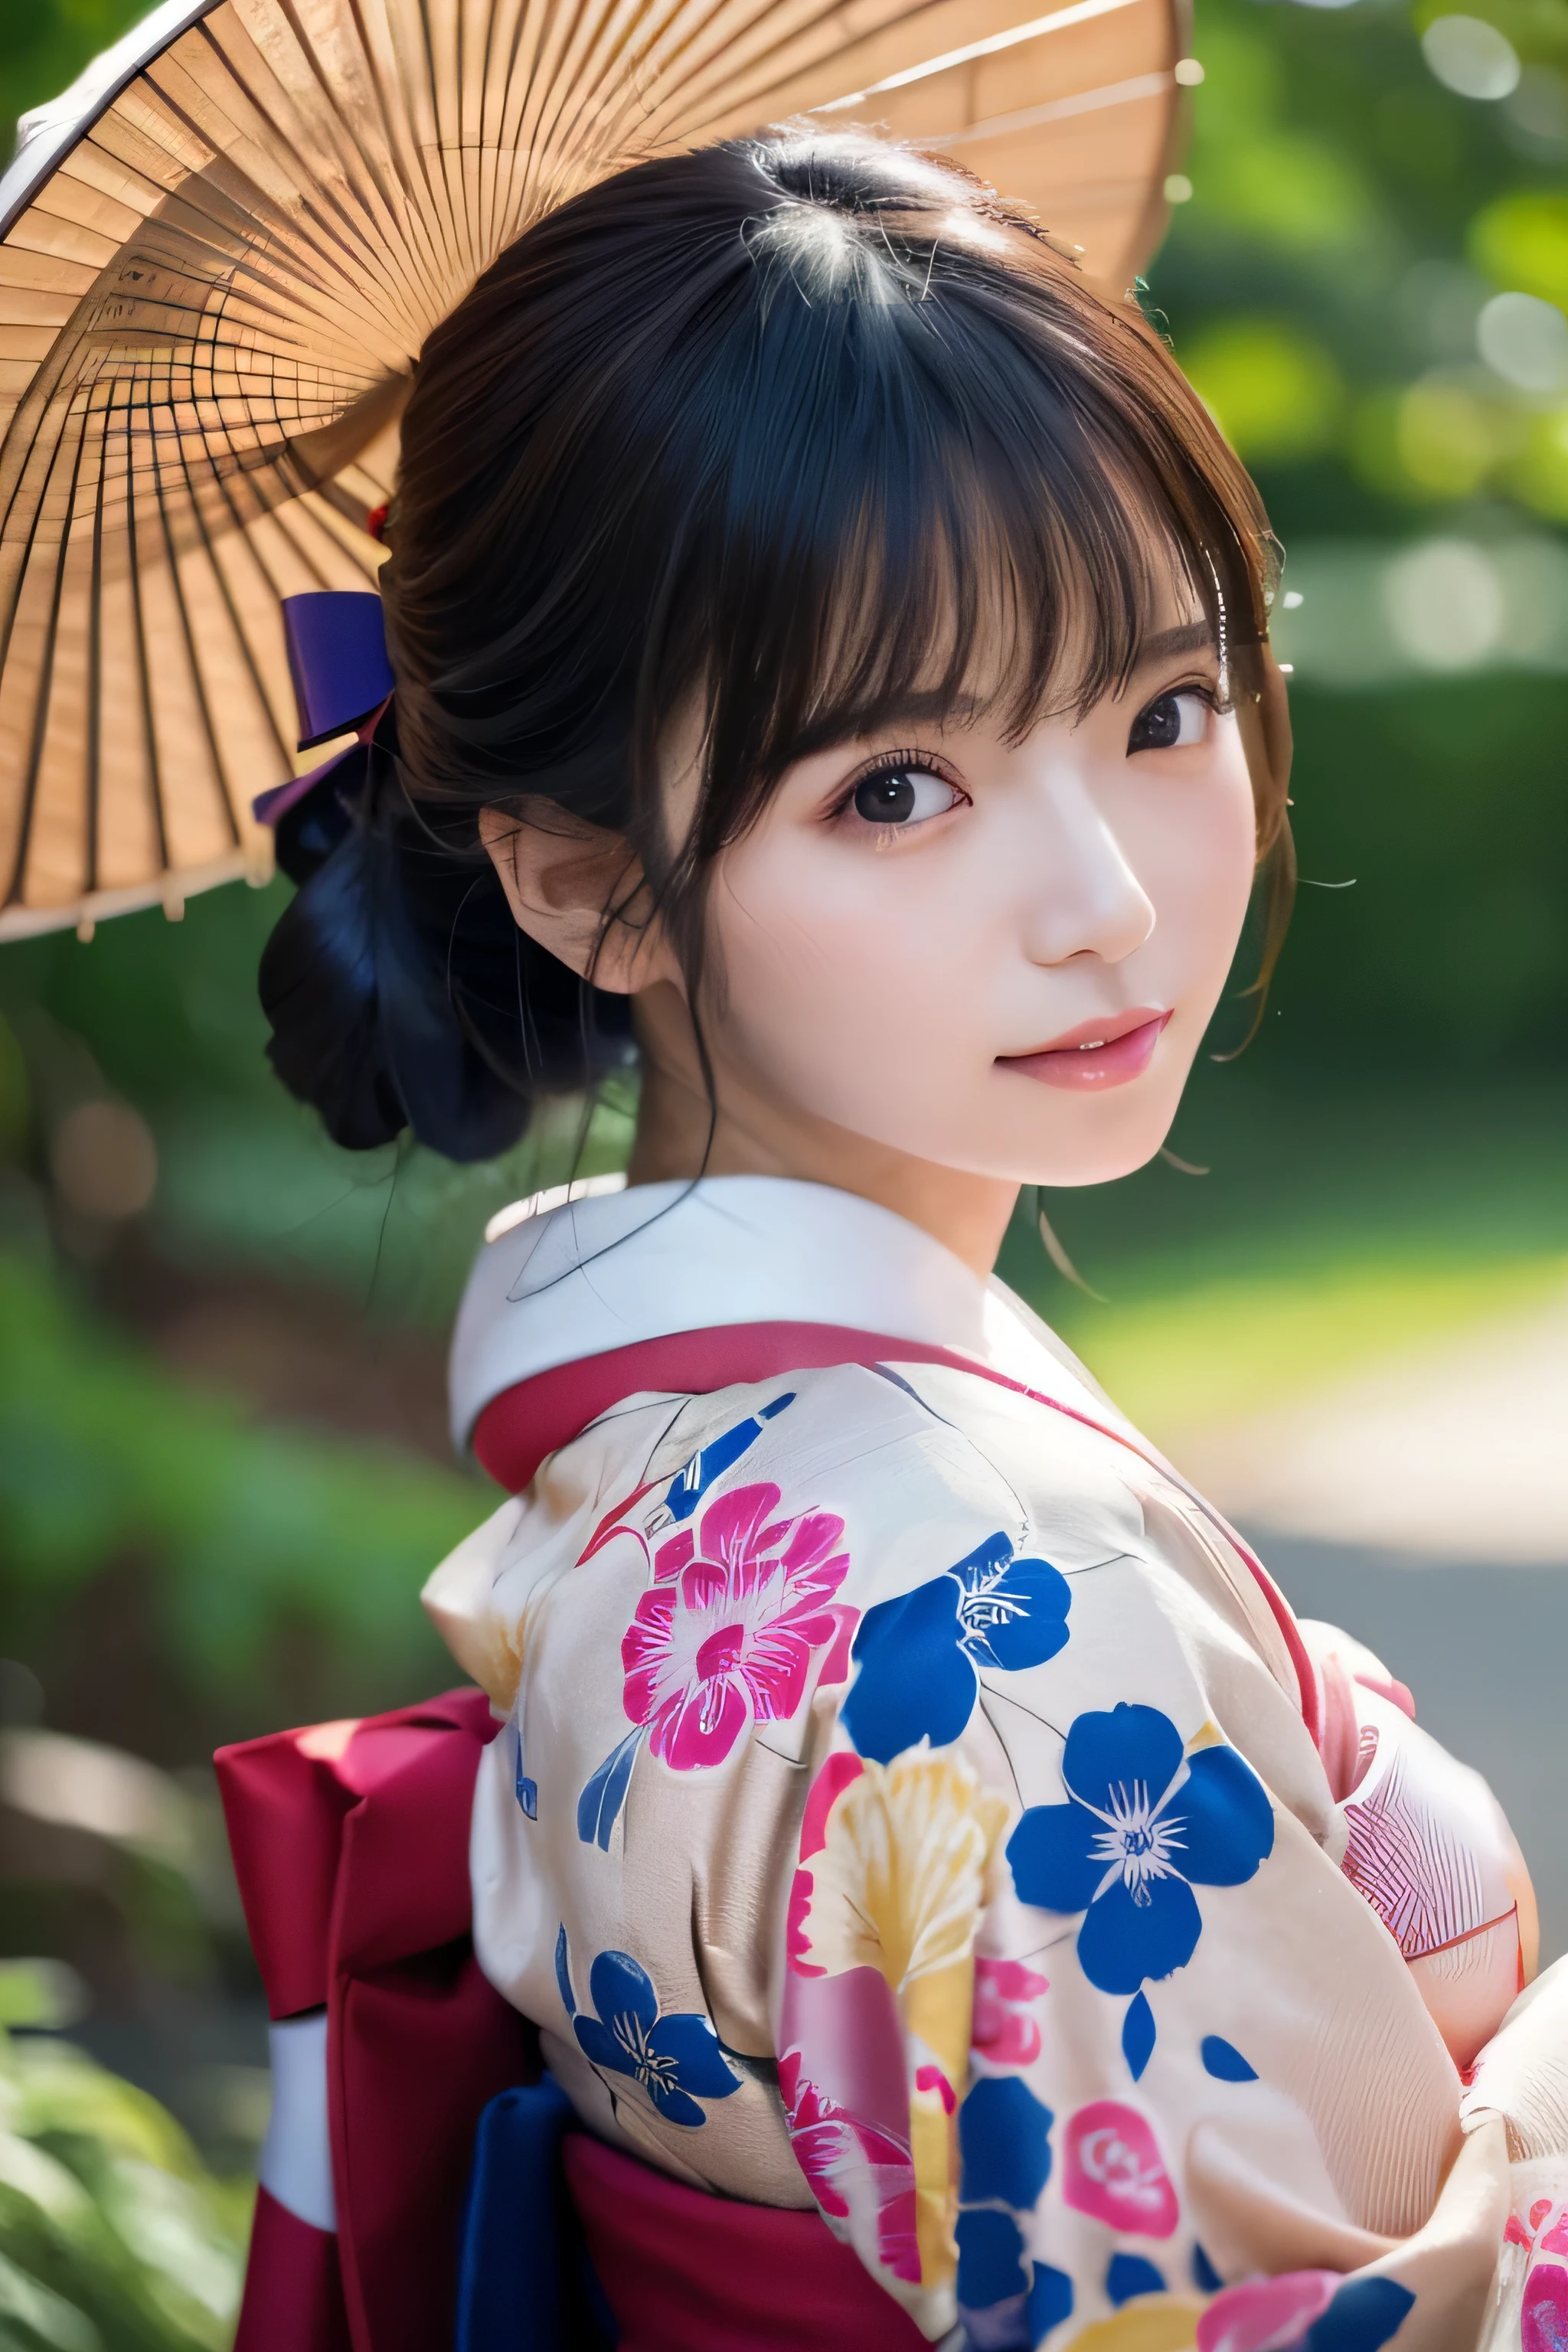 (Kimono)、((35 Jahre alt))、zufällige Pose、(Top Qualität,Meisterwerk:1.3,Eine hohe Auflösung,),(ultra-detailliert,Ätzmittel),(Photorealsitic:1.4,RAW-Aufnahmen,)Ultrarealistische Aufnahme,Eine sehr detaillierte,Hochauflösende 16K-Nahaufnahme menschlicher Haut、 Die Hautstruktur ist natürlich、、Die Haut sieht gesund aus und hat einen gleichmäßigen Teint、 Nutzen Sie natürliches Licht und Farbe,1 Mädchen,japanisch,,Kawaii,Ein dunkelhaariger,mittleres Haar,,lächeln,,(Tiefenschärfe、chromatische Aberration、、Große Auswahl an Beleuchtung、natürliche Beschattung、)、